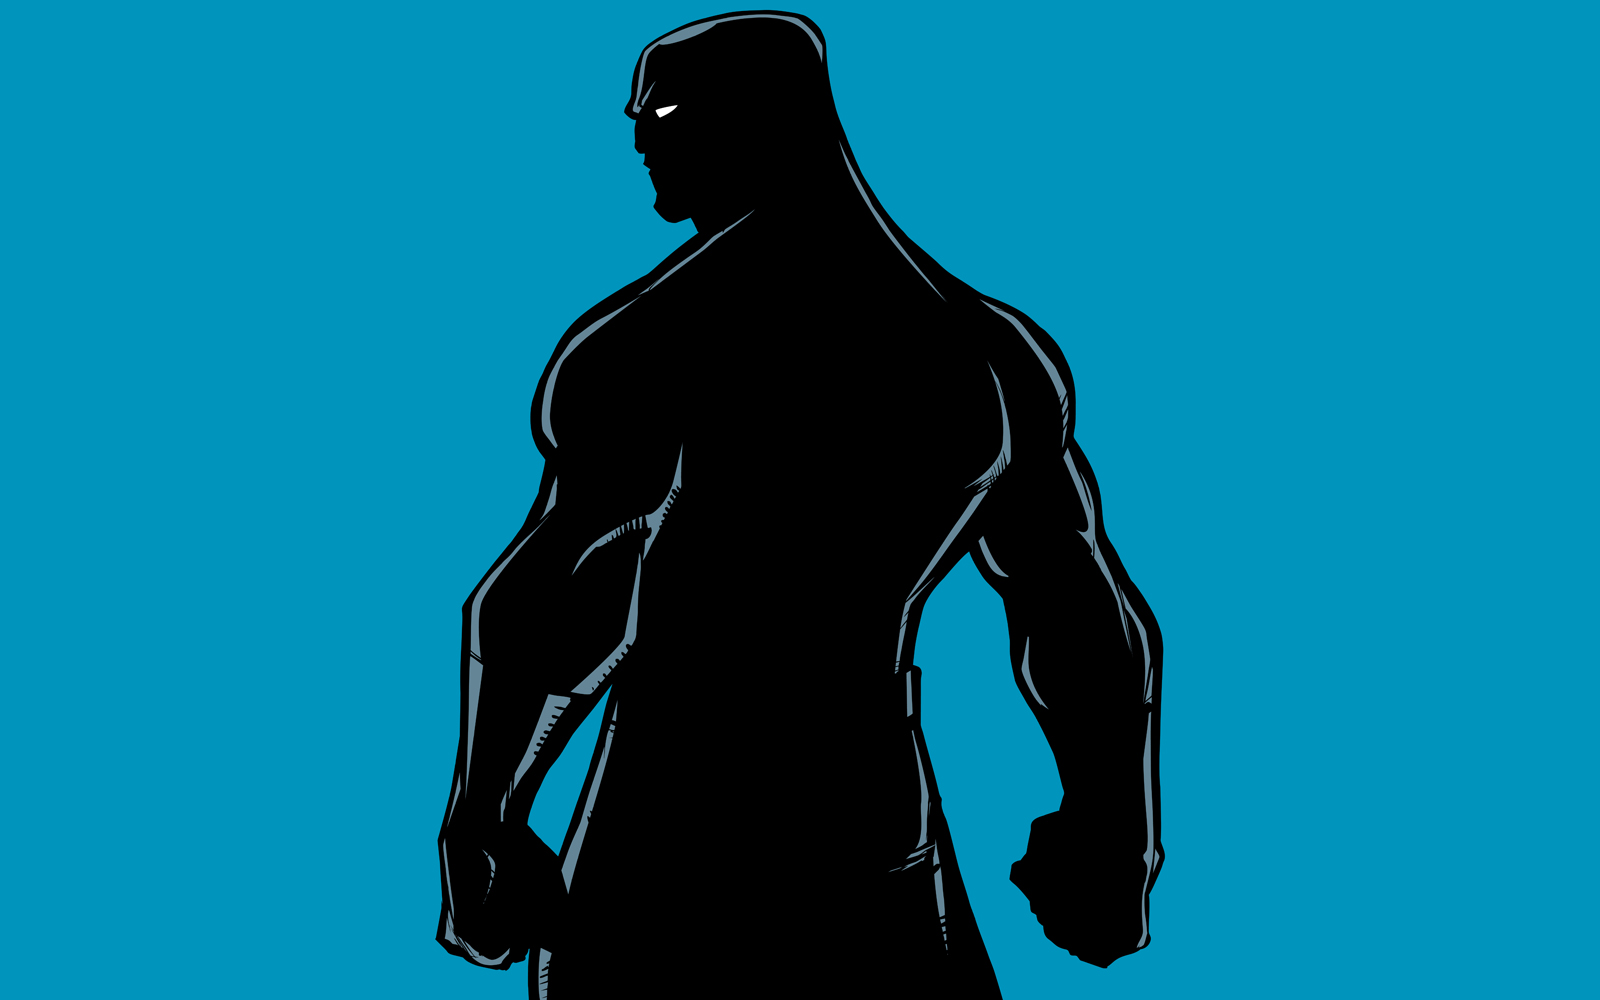 Superhero Back Battle Mode Silhouette - Illustration